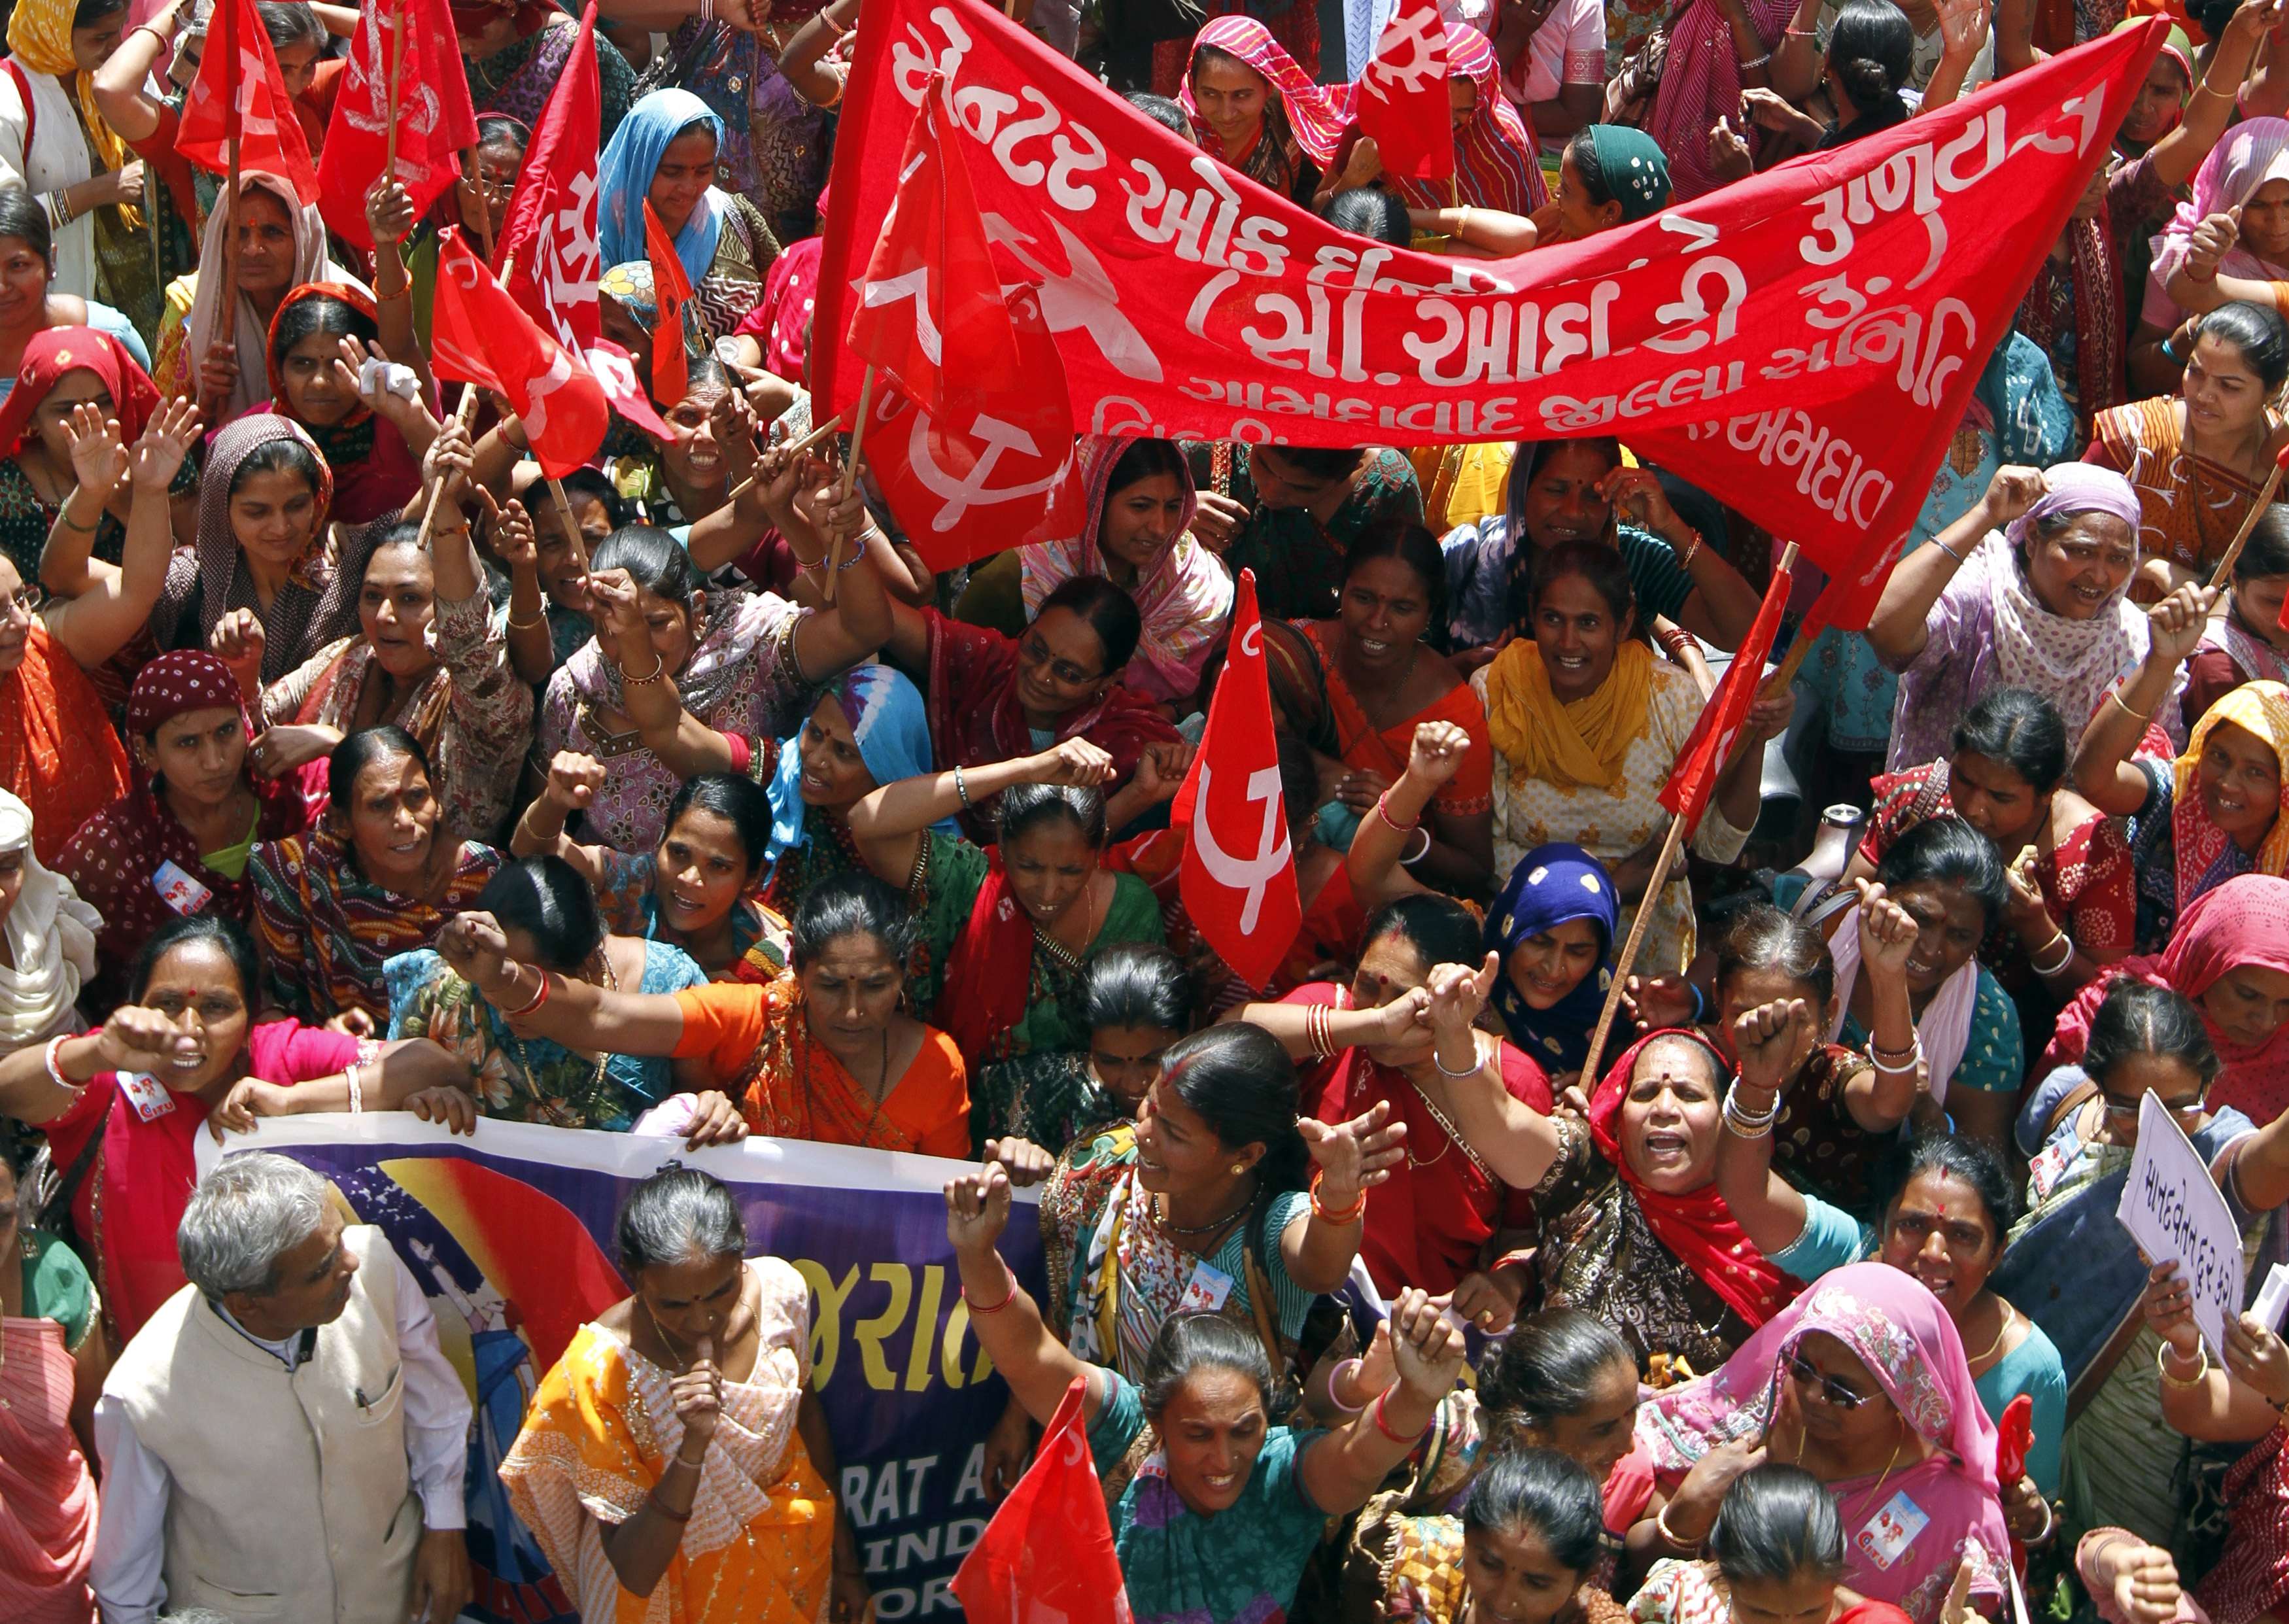 Ινδία: Εκατομμύρια διαδηλωτές ζητούν καθιέρωση κατώτατου μισθού